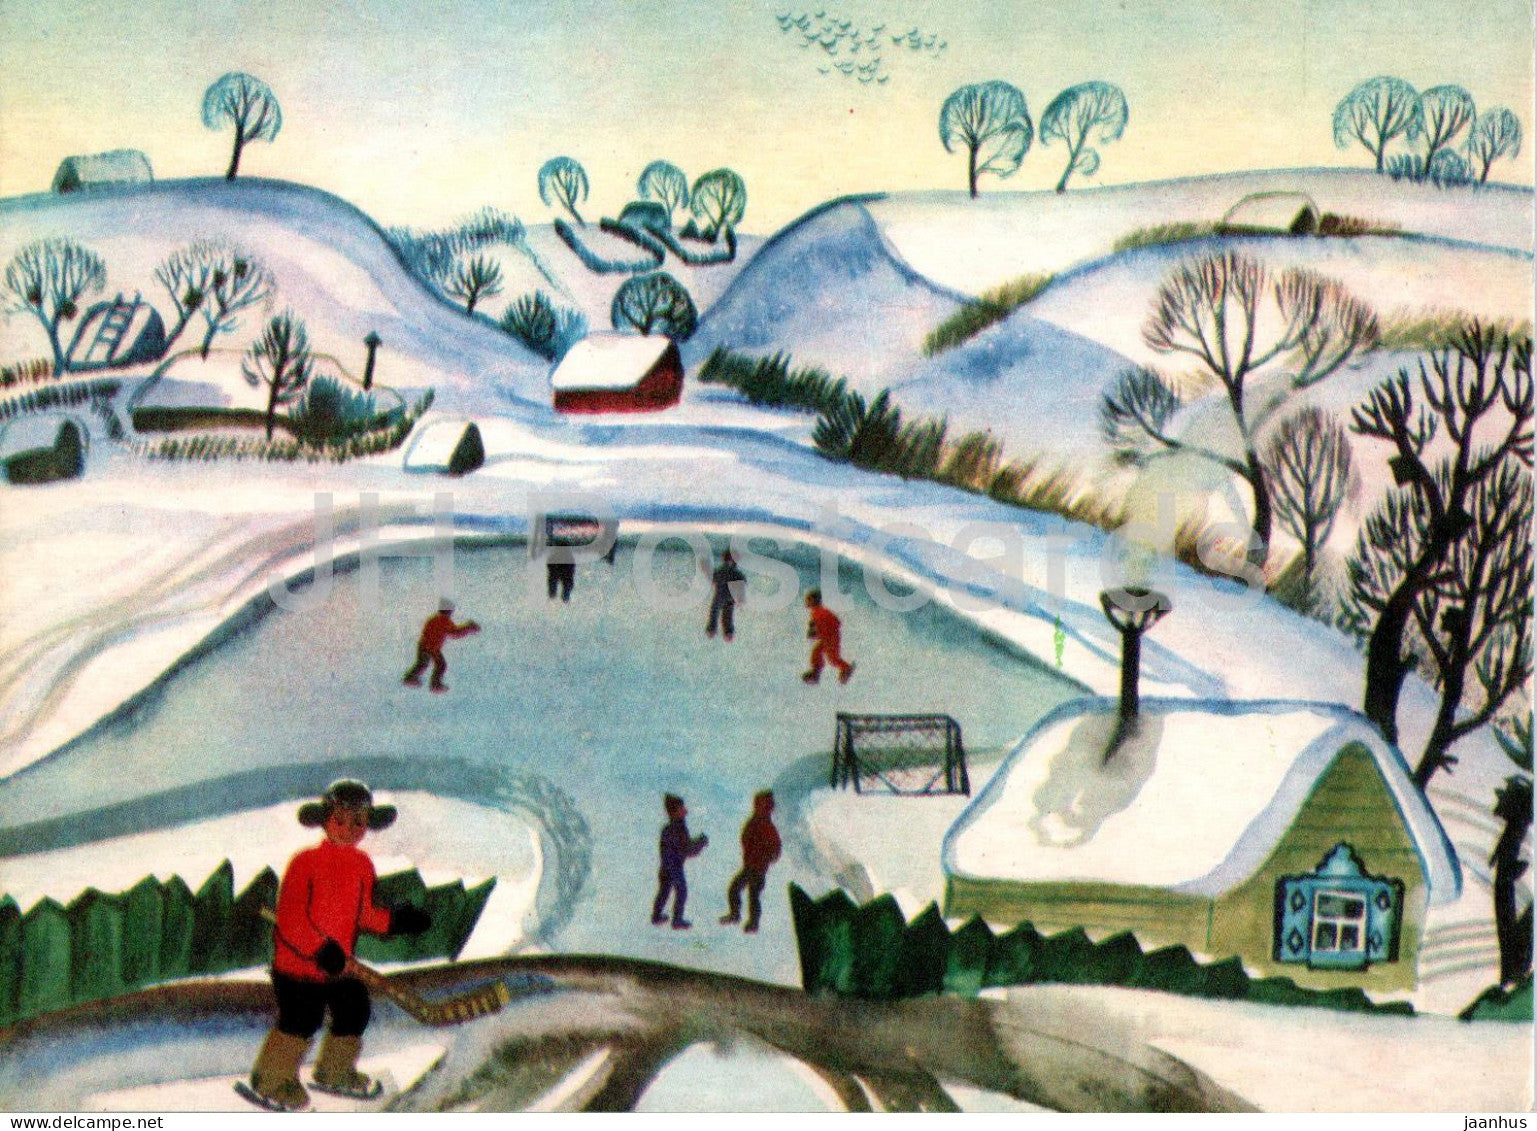 Painting by D. Bekaryan - Seasons - December month - Ice Rink - Armenian art - 1970 - Russia USSR - unused